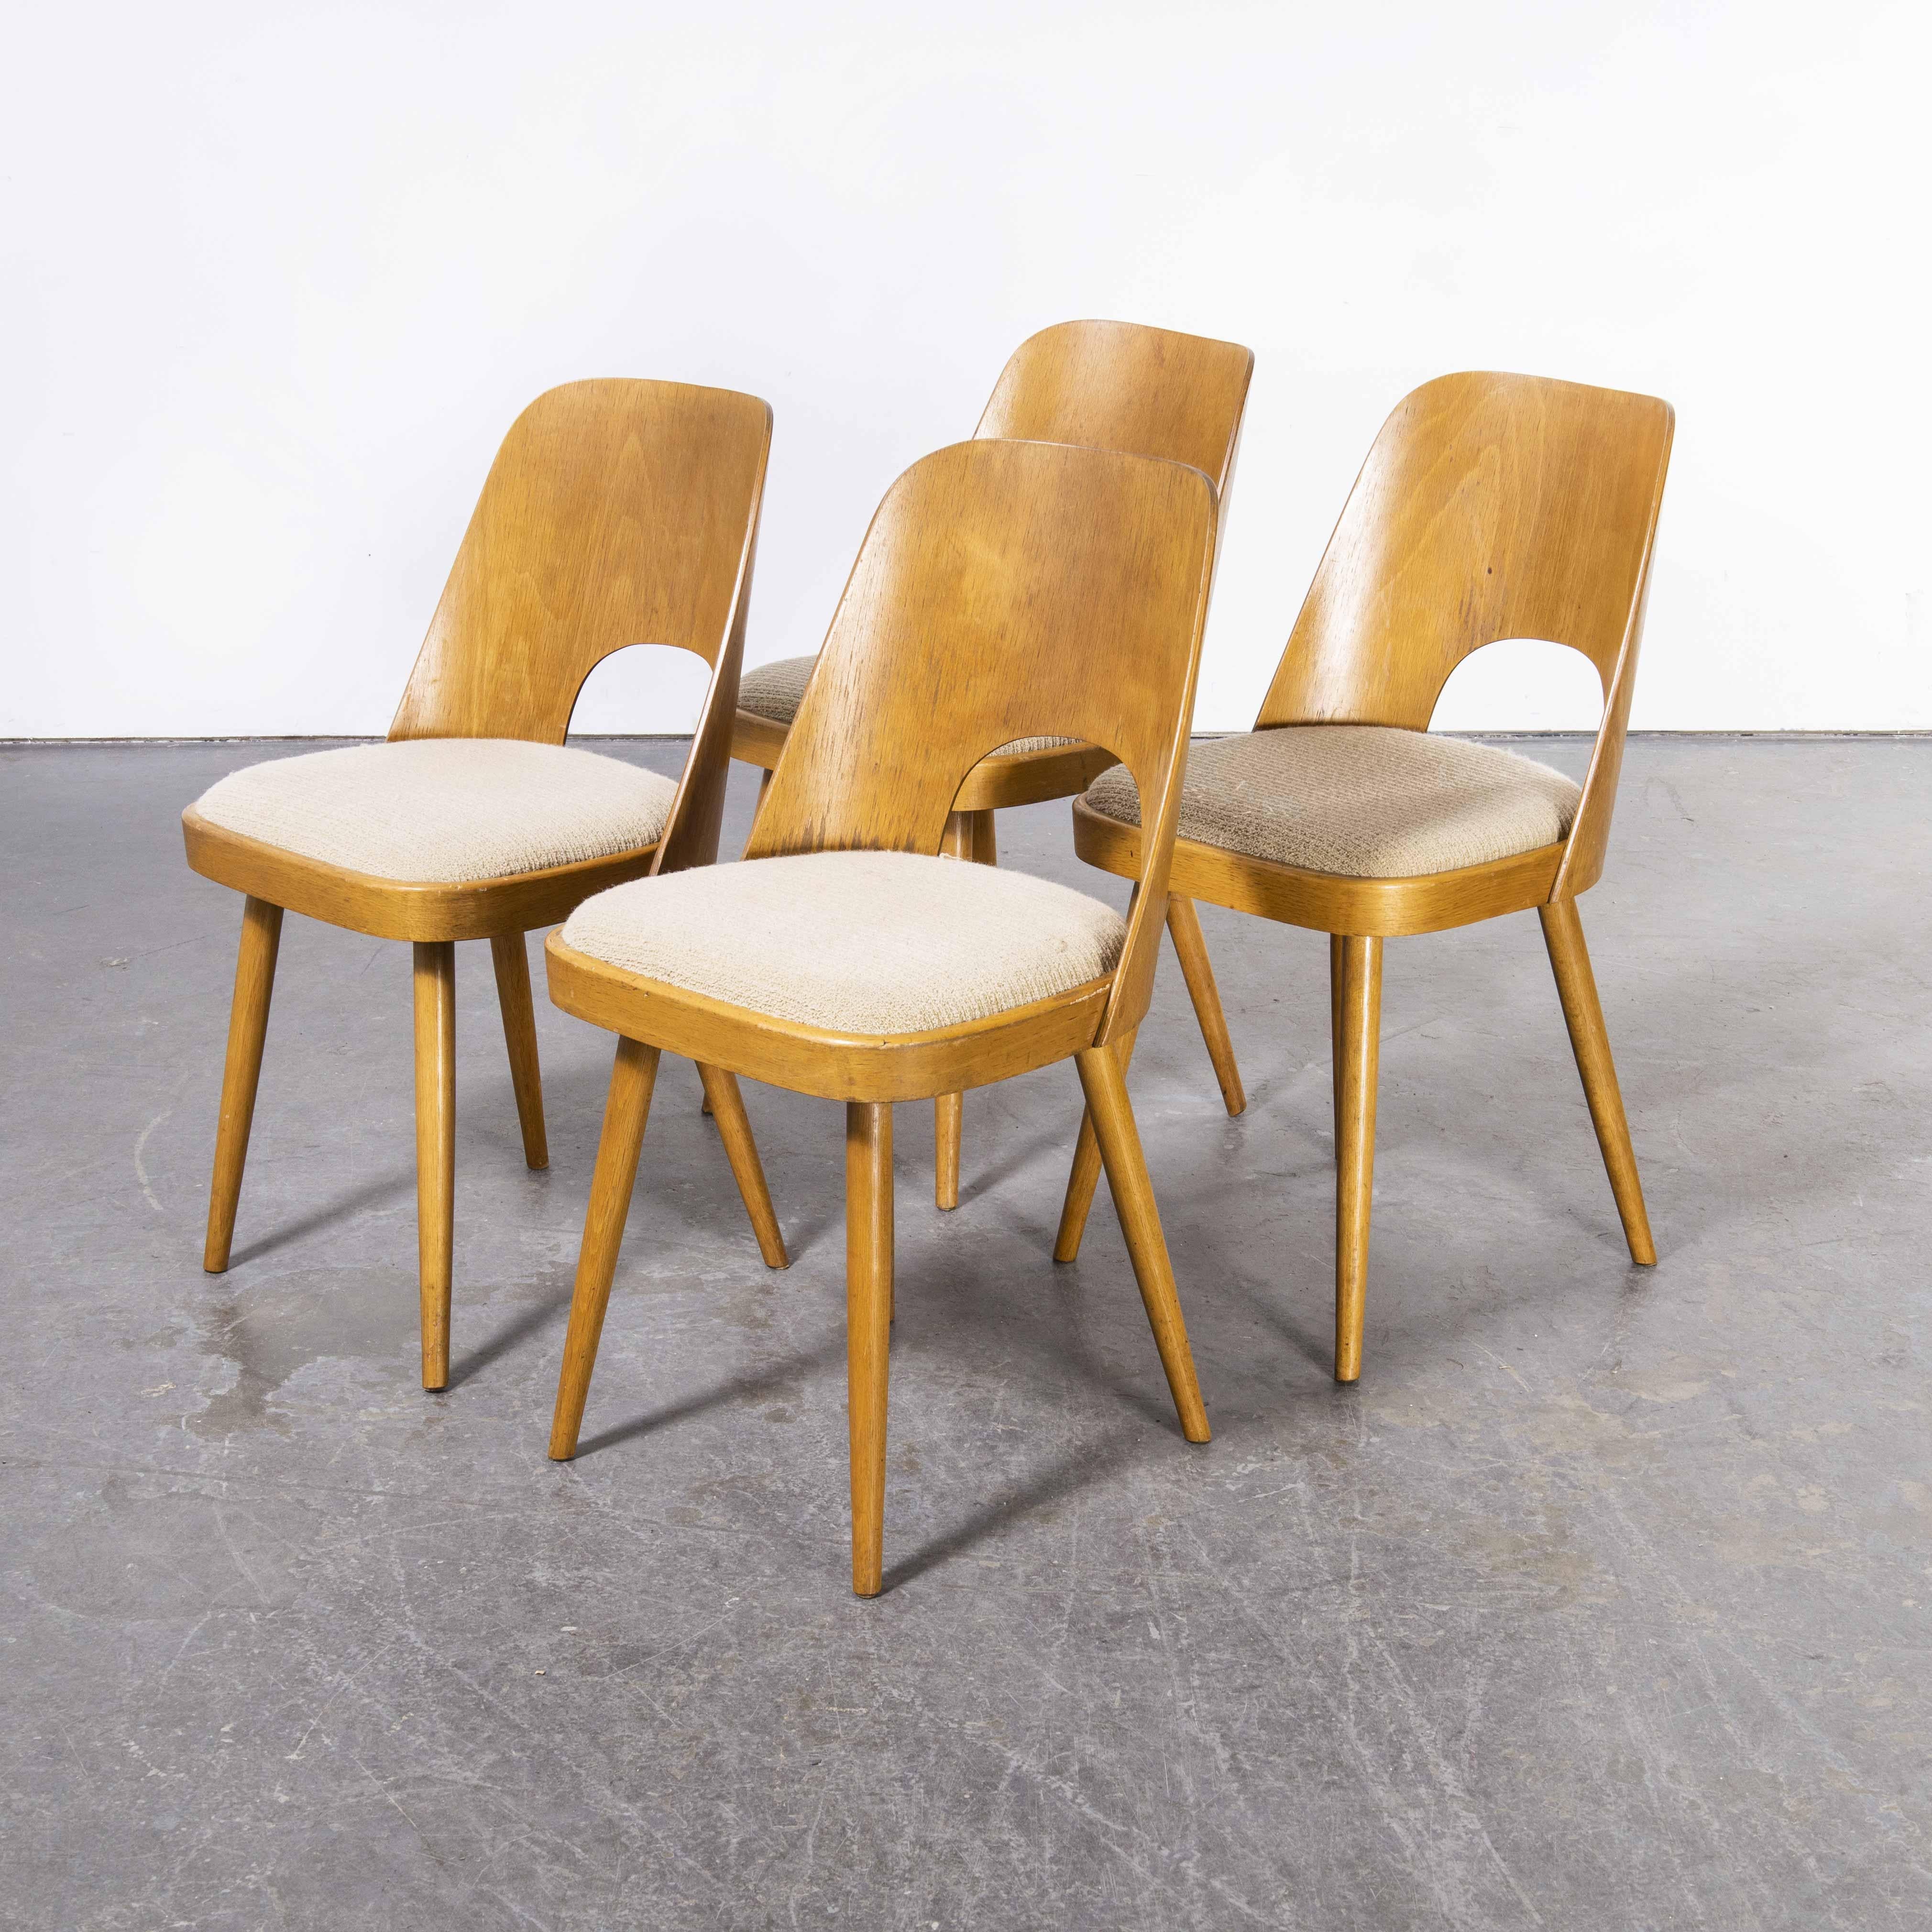 1960's Set von vier gepolsterten Esszimmerstühlen aus Buche - Oswald Haerdtl
1960's Set von vier gepolsterten Esszimmerstühlen - Oswald Haerdtl. Diese Stühle wurden von der berühmten tschechischen Firma Ton hergestellt, die auch heute noch tätig